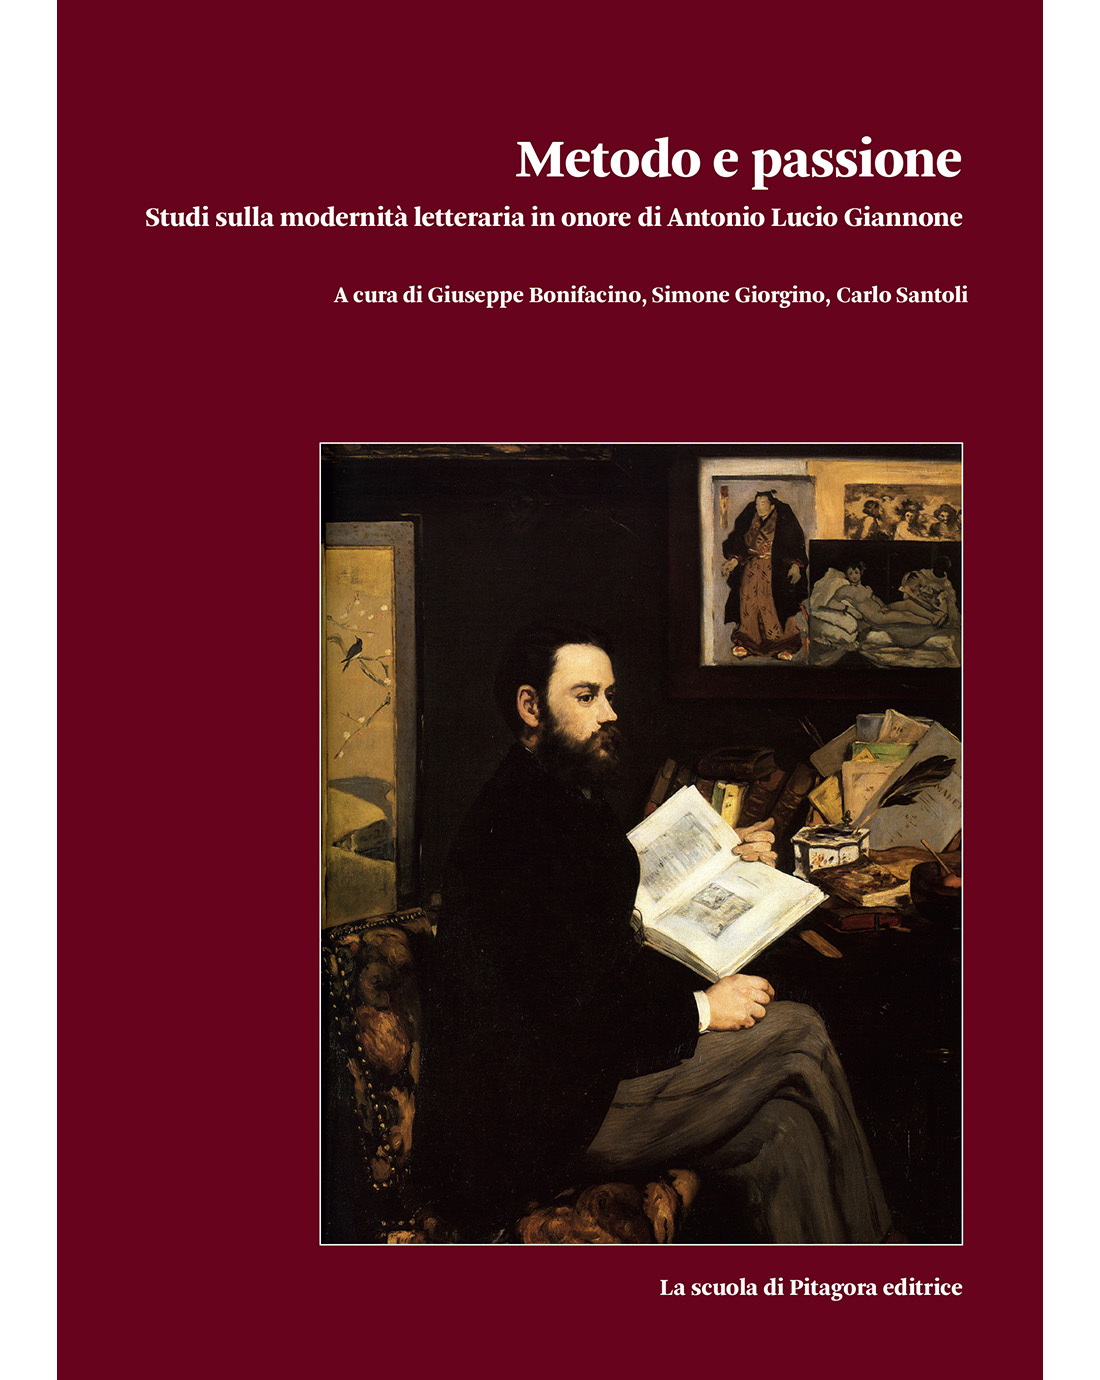 Metodo e passione (Open Access)